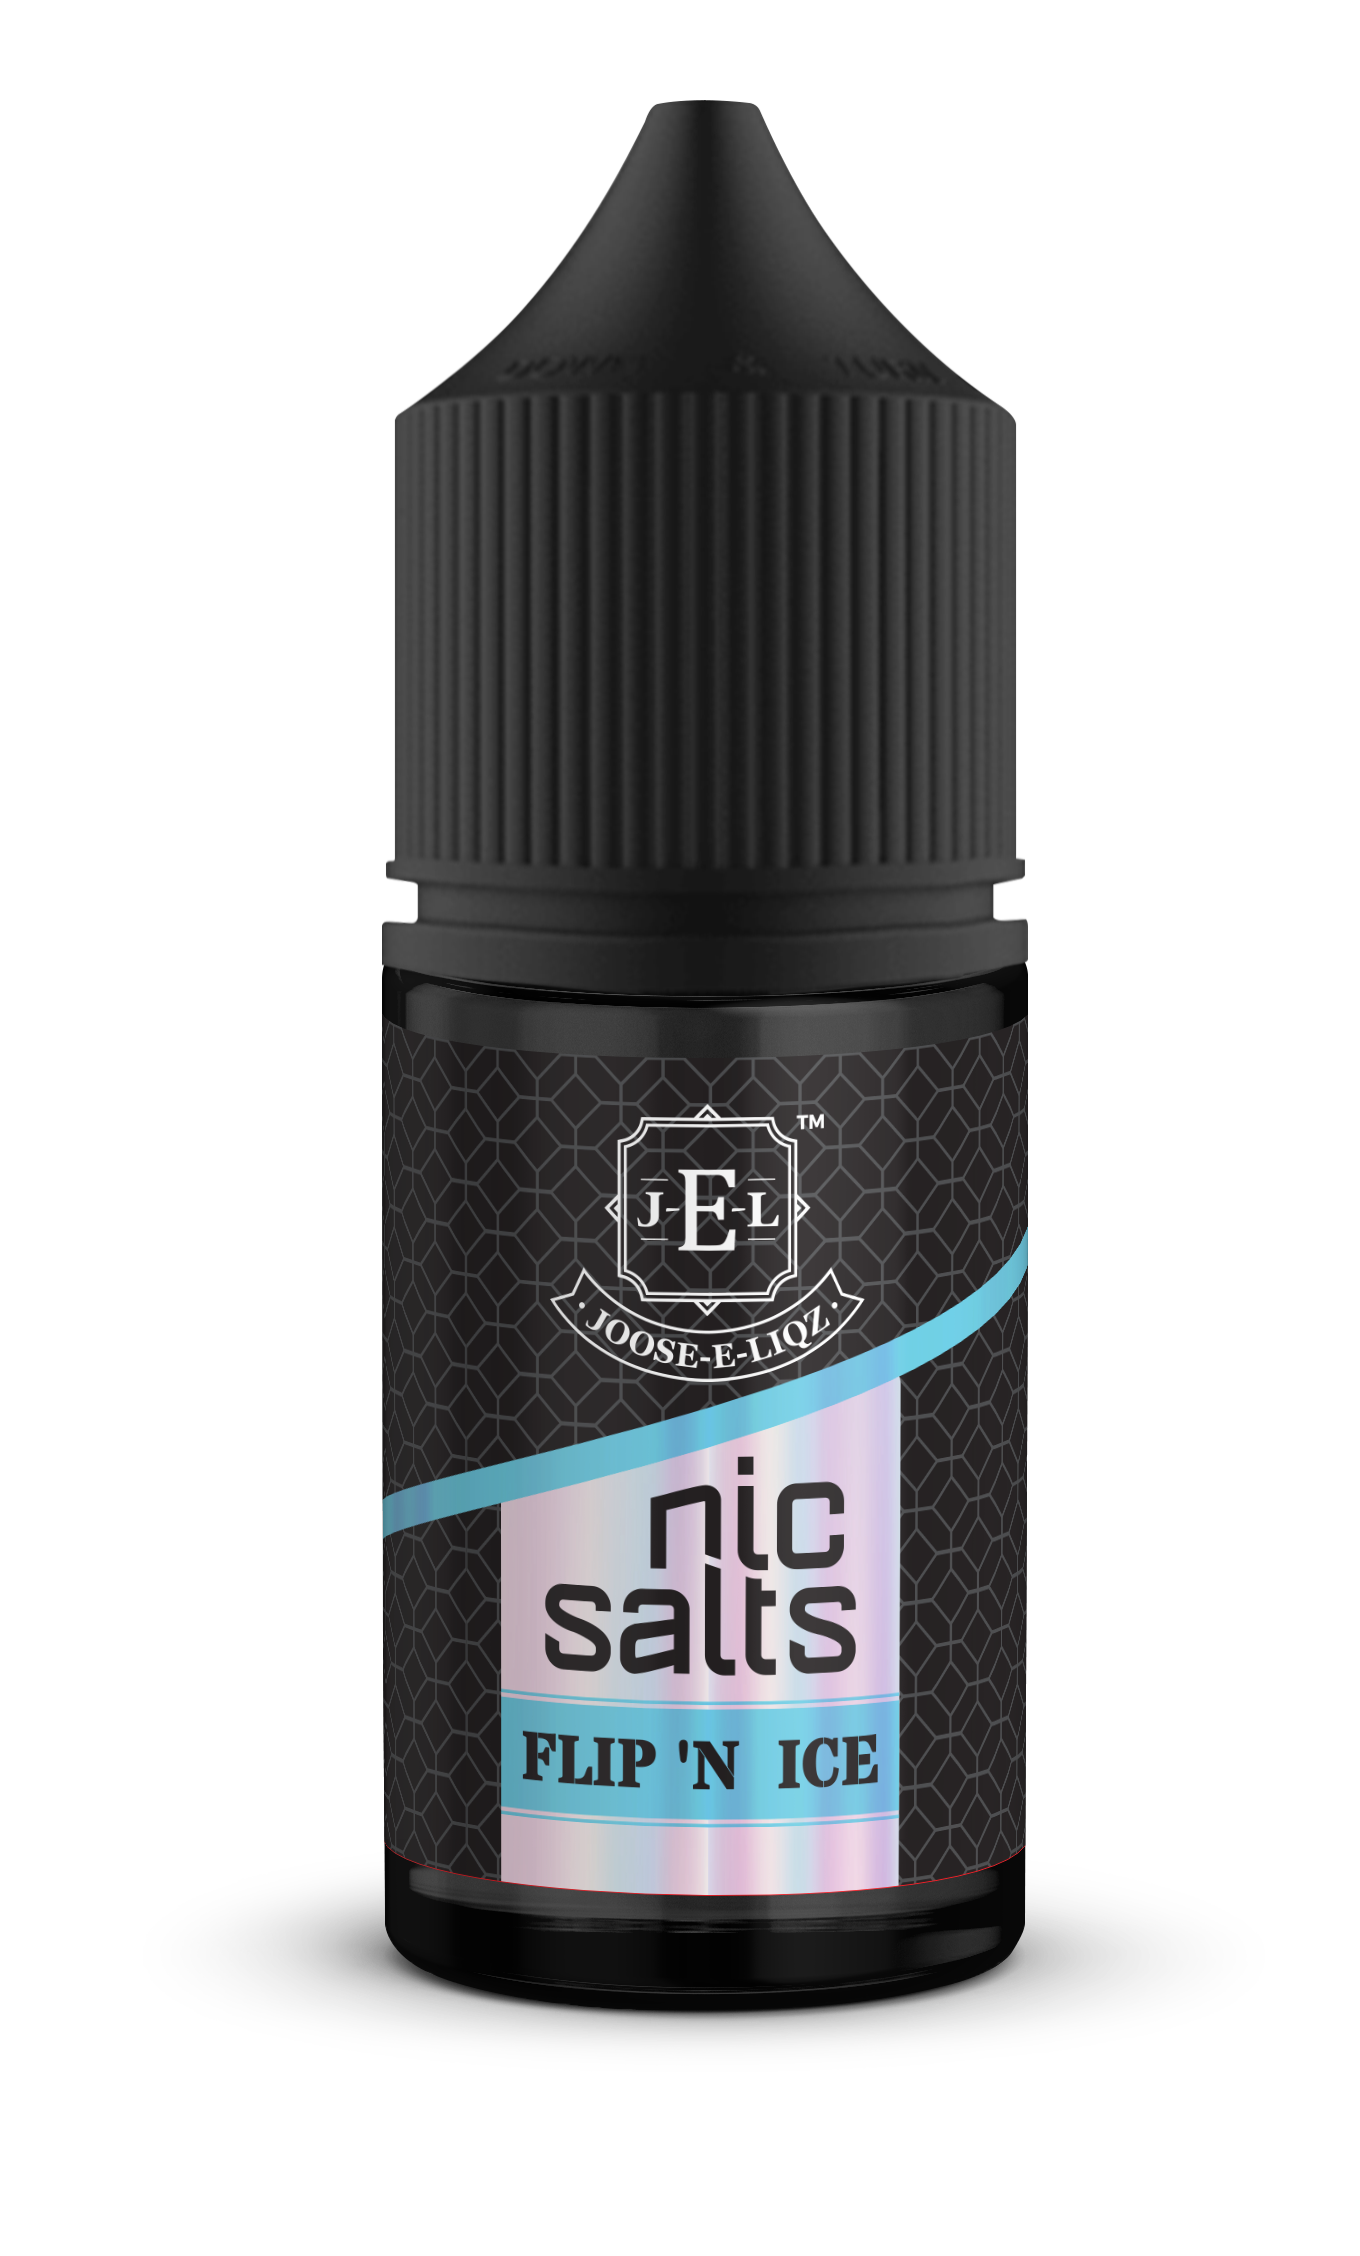 Joose-E-Liqz I FLIP 'N ICE Nic Salts 30ml